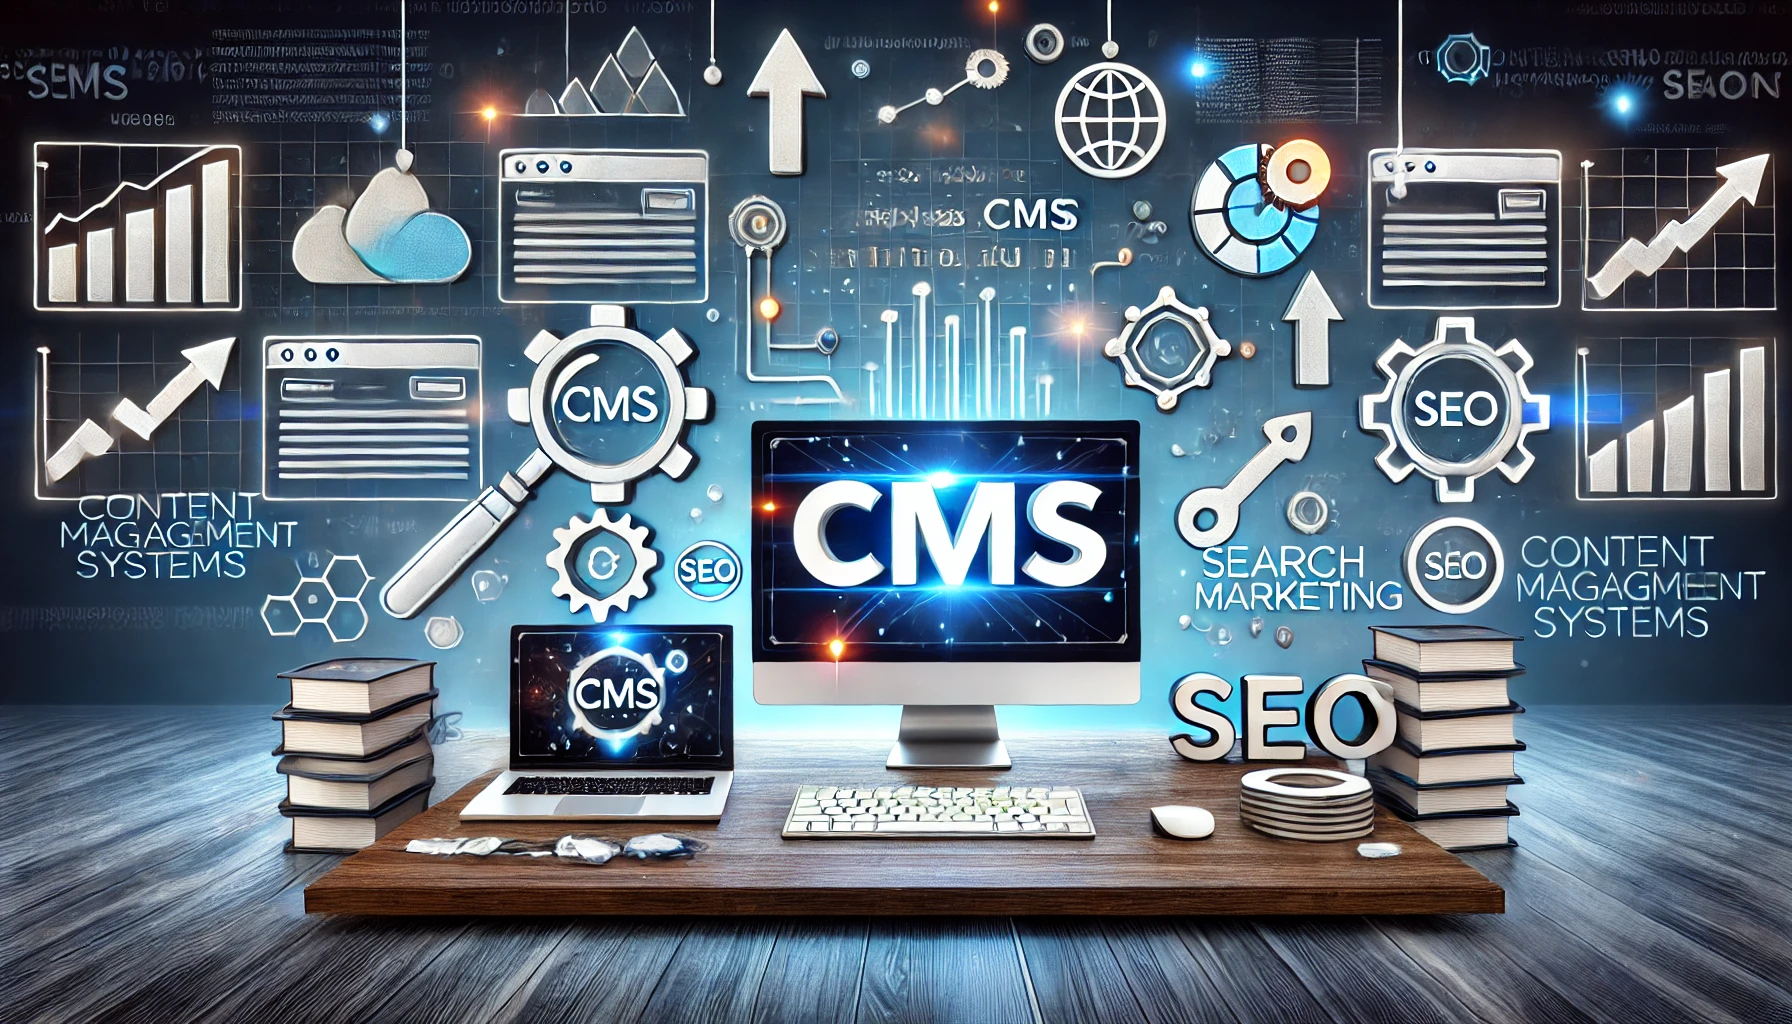 כיצד לבחור מערכת ניהול תוכן (CMS) שתתמוך במאמצי קידום האתרים שלכם